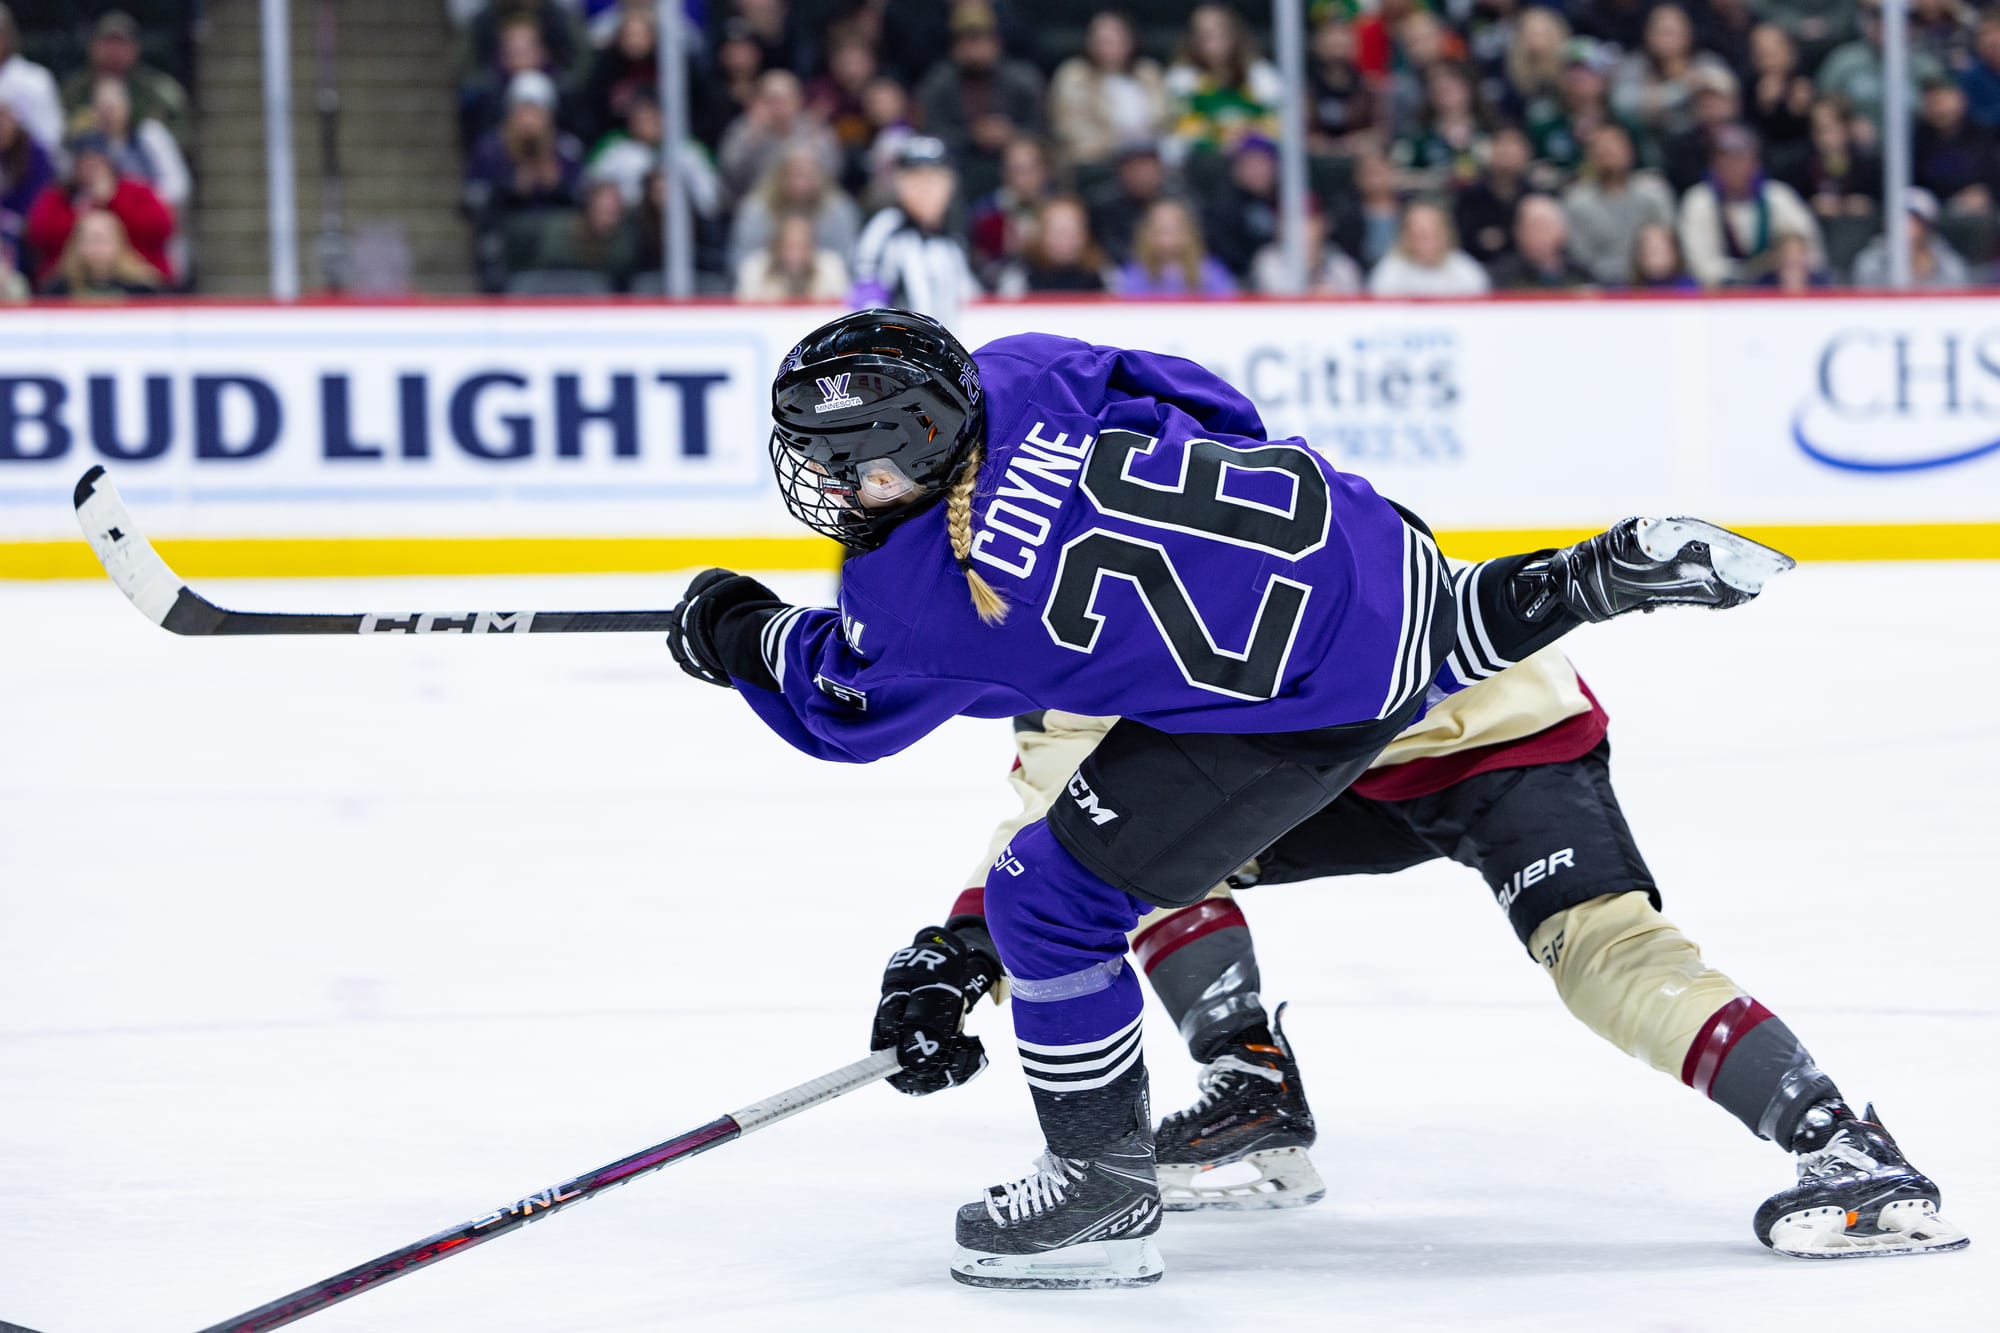 Kendall Coyne Schofield, wearing a purple home uniform, takes a shot against Montréal.